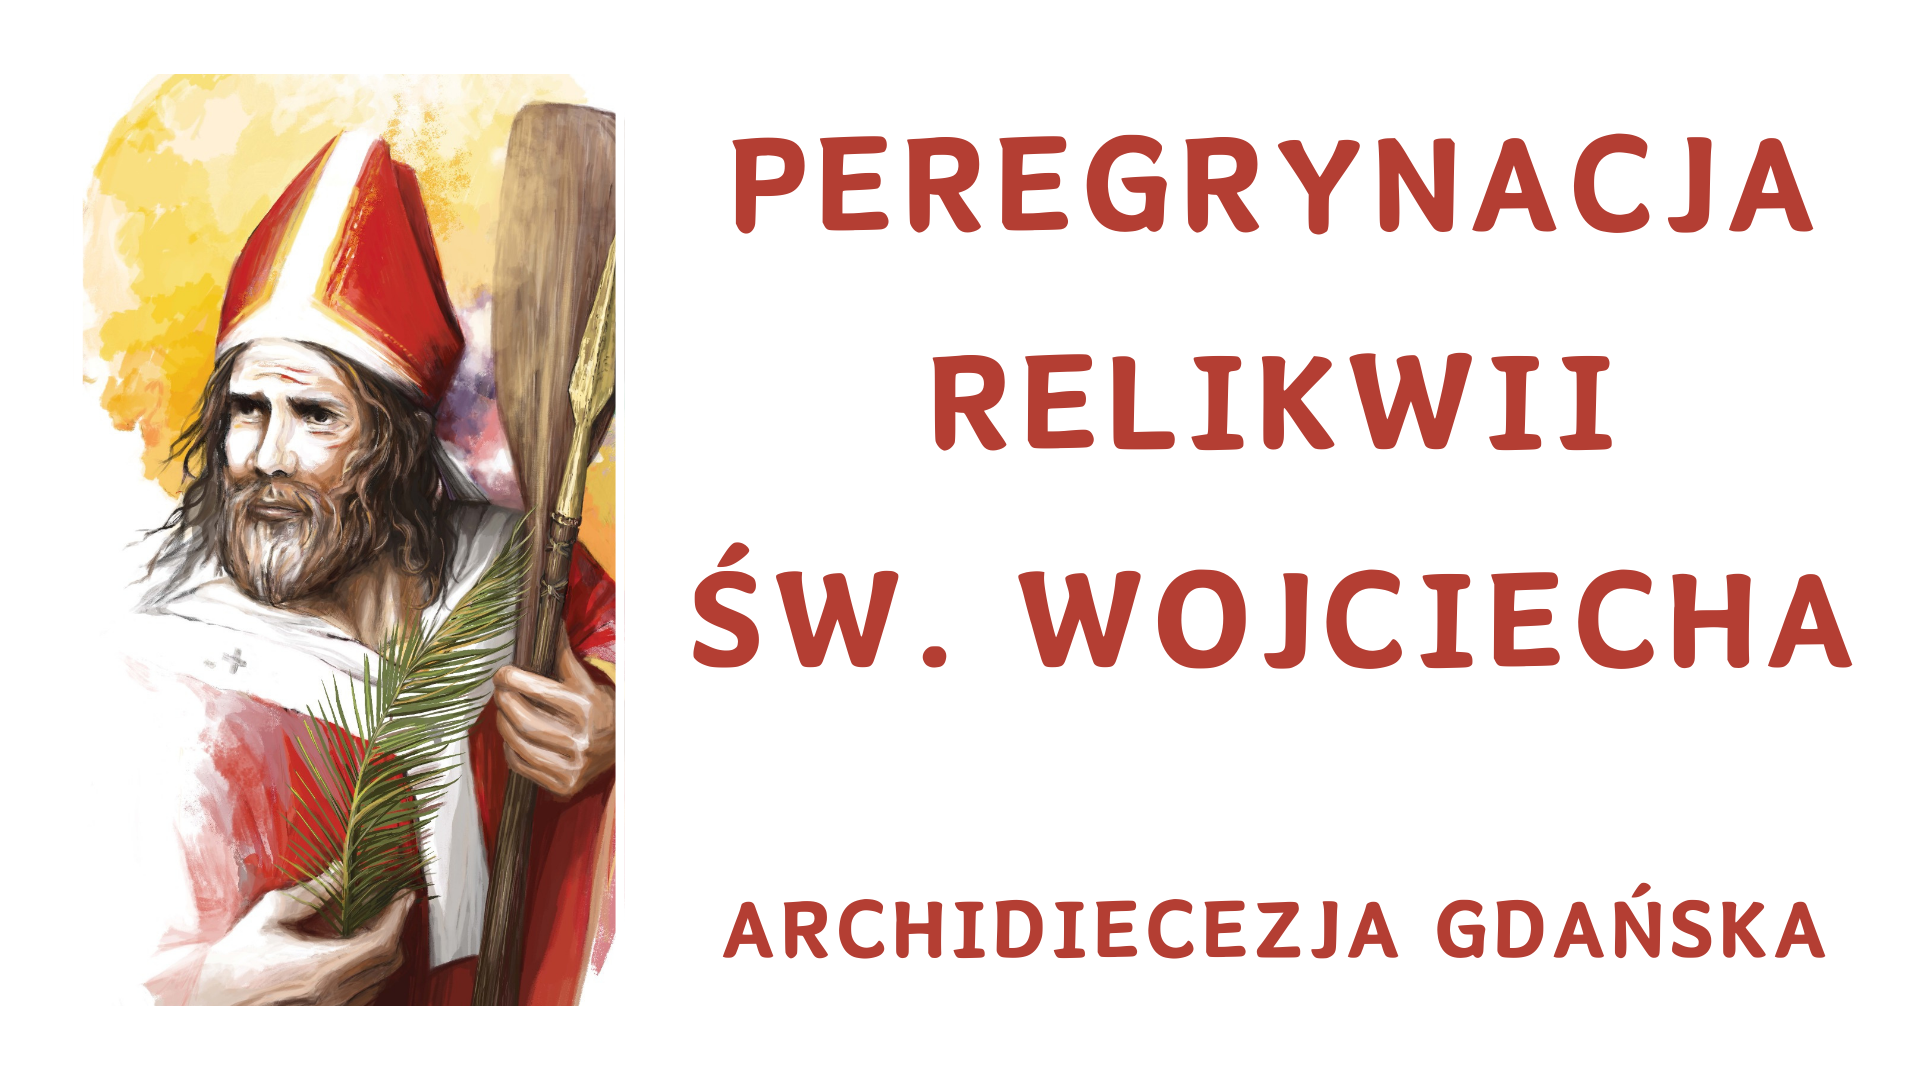 Peregrynacja Relikwii Św. Wojciecha